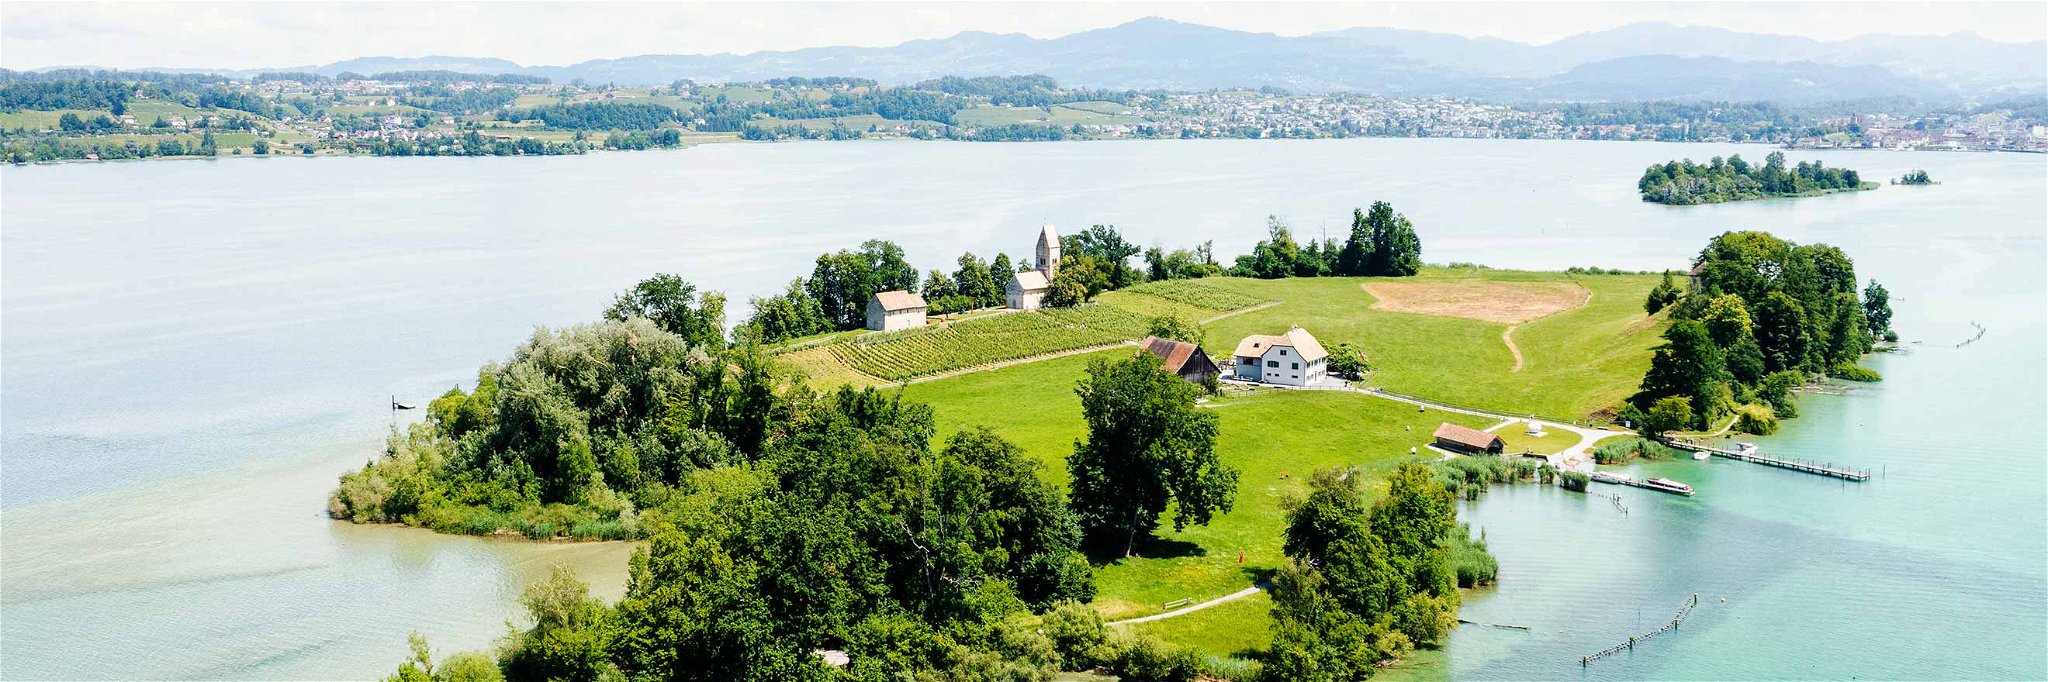 Das Inselrestaurant Ufnau auf dem Zürichsee